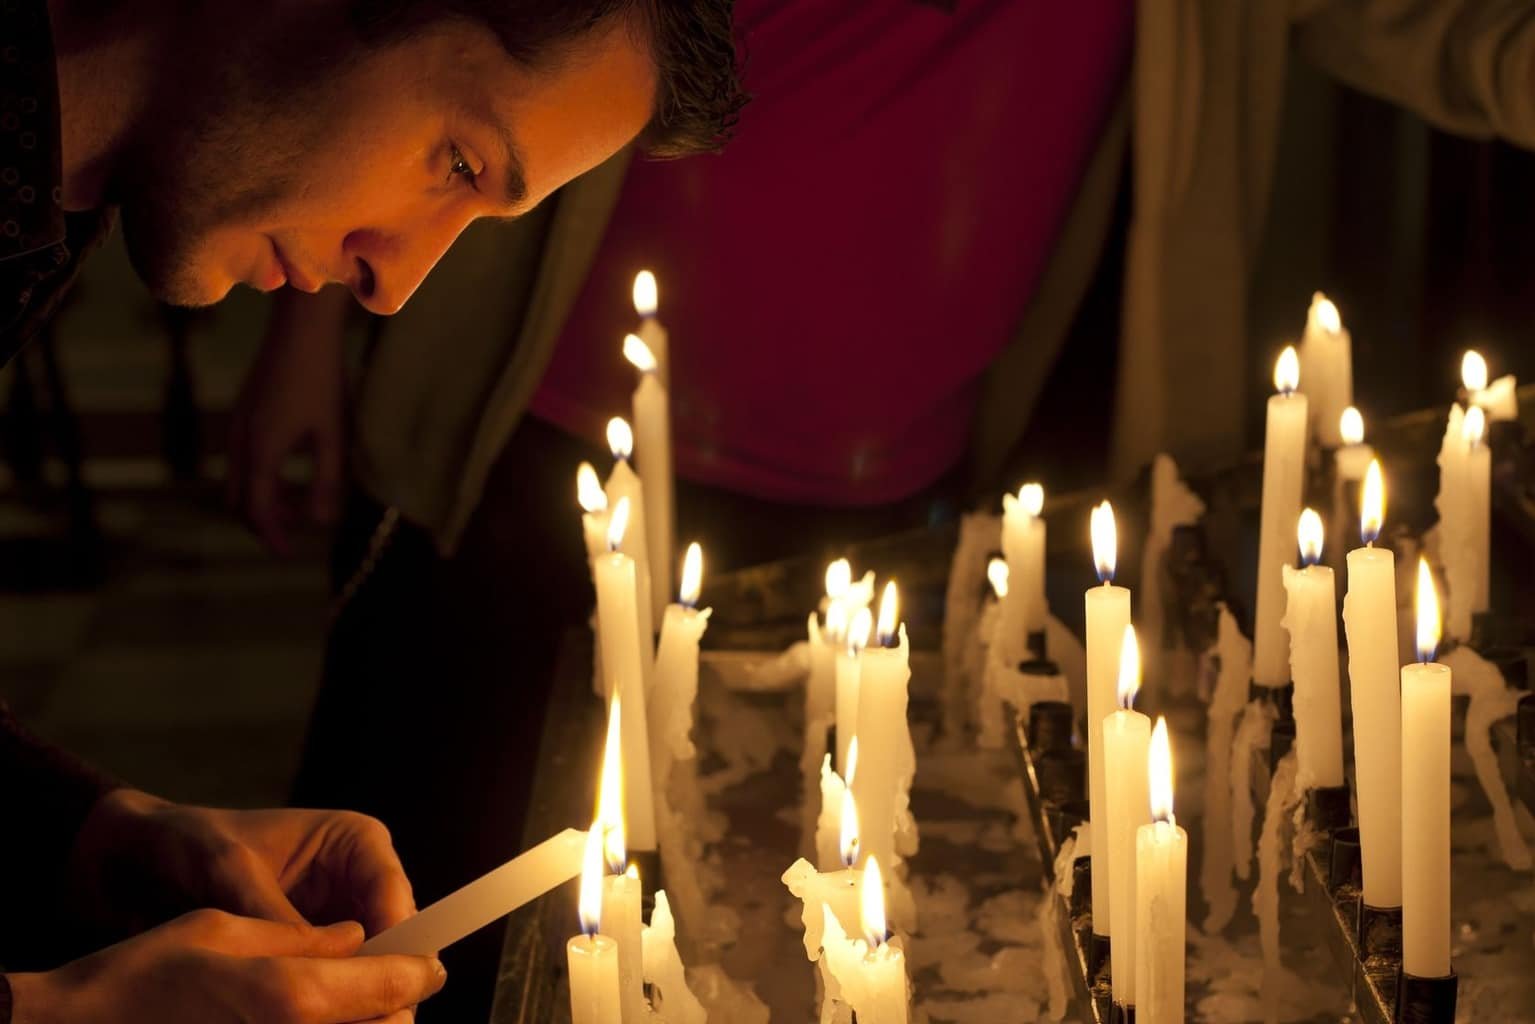 Мужчина ставит свечу. Мужчина молится в храме. Человек свеча храм. Люди с свечами в церкви. Человек со свечкой.